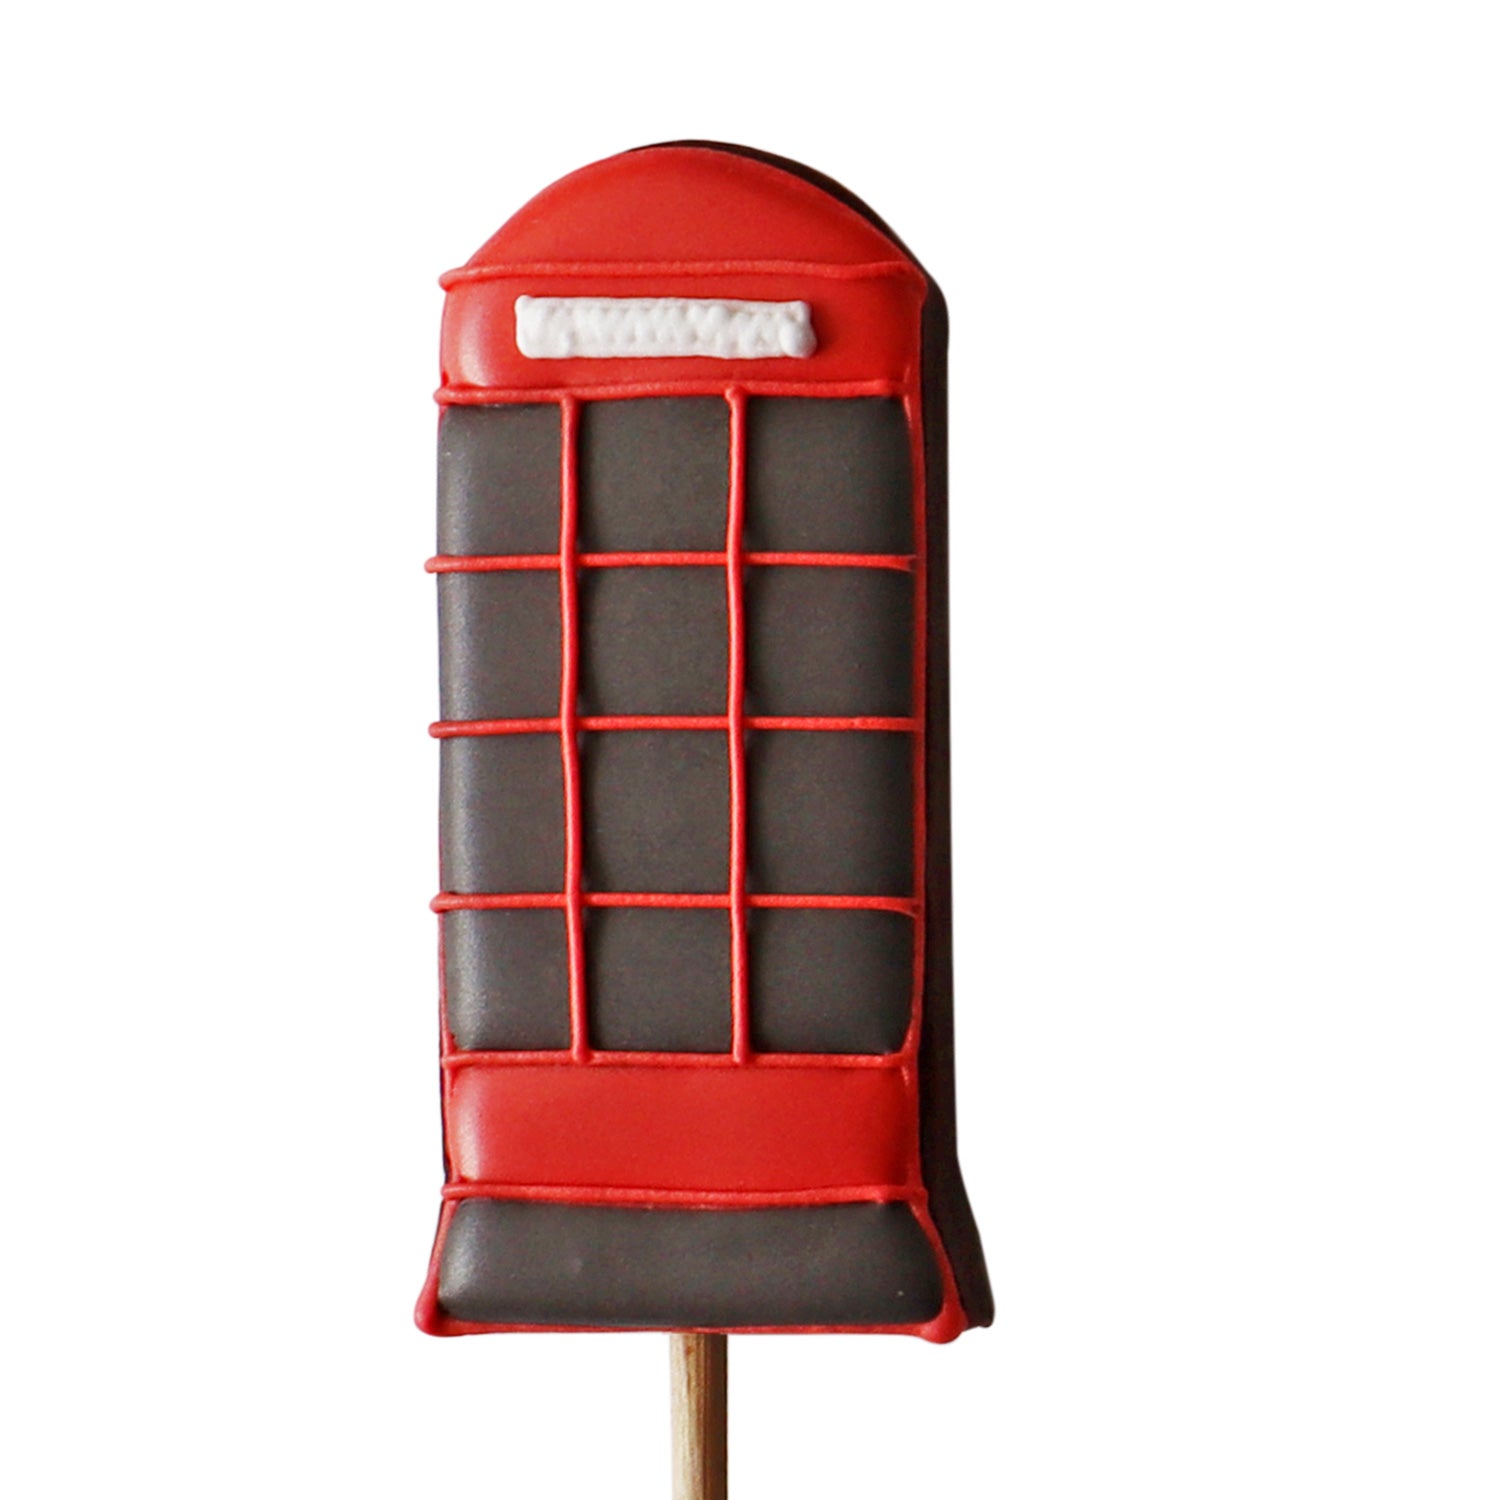 Biscuiteers - Biscuit Pops - Telephone Box